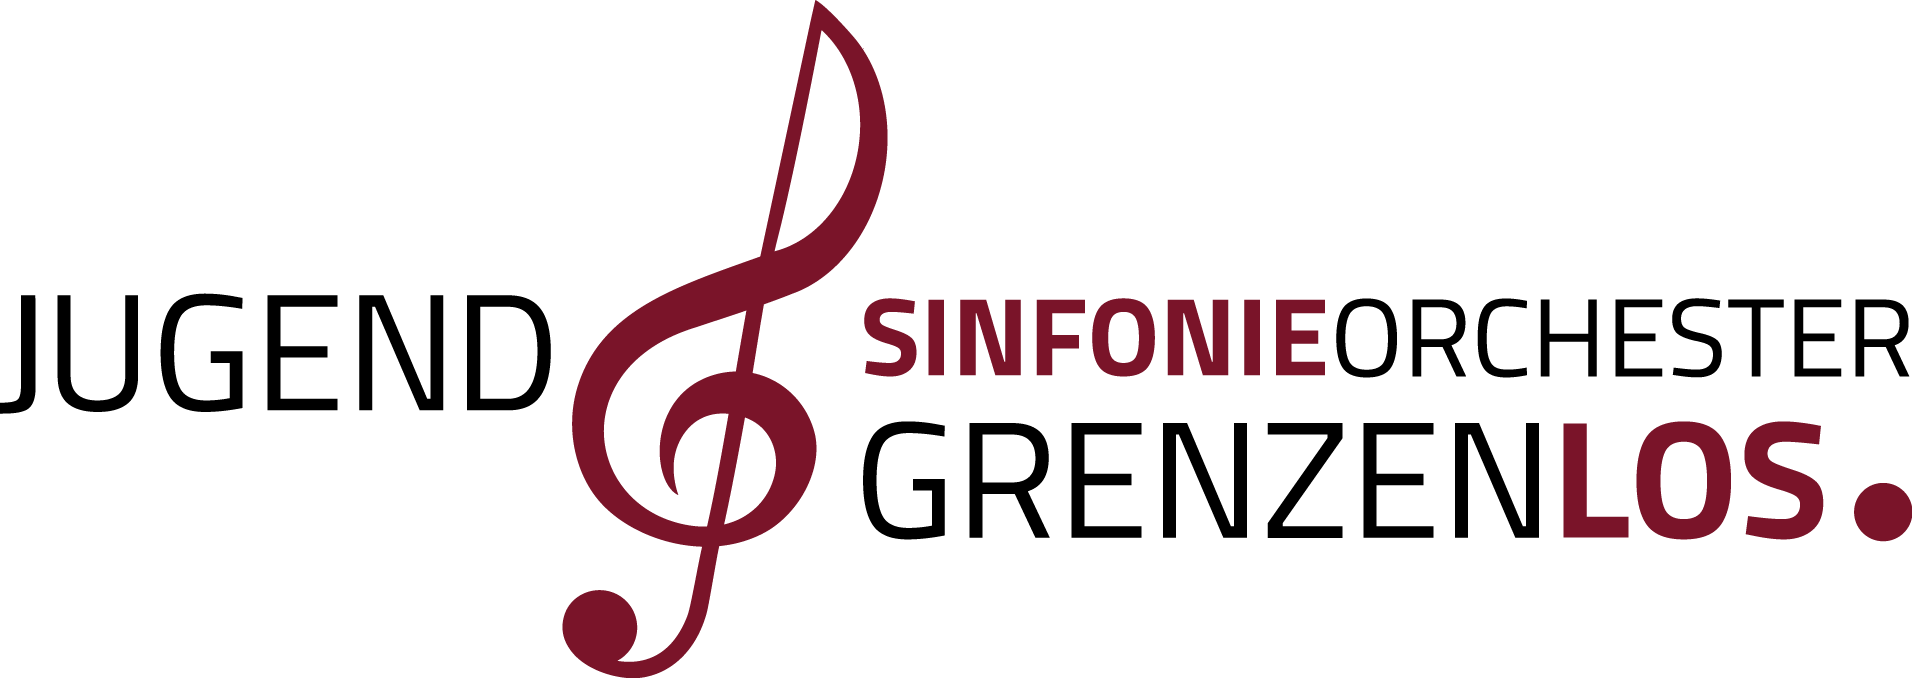 Jugendsinfonieorchester Grenzenlos Logo